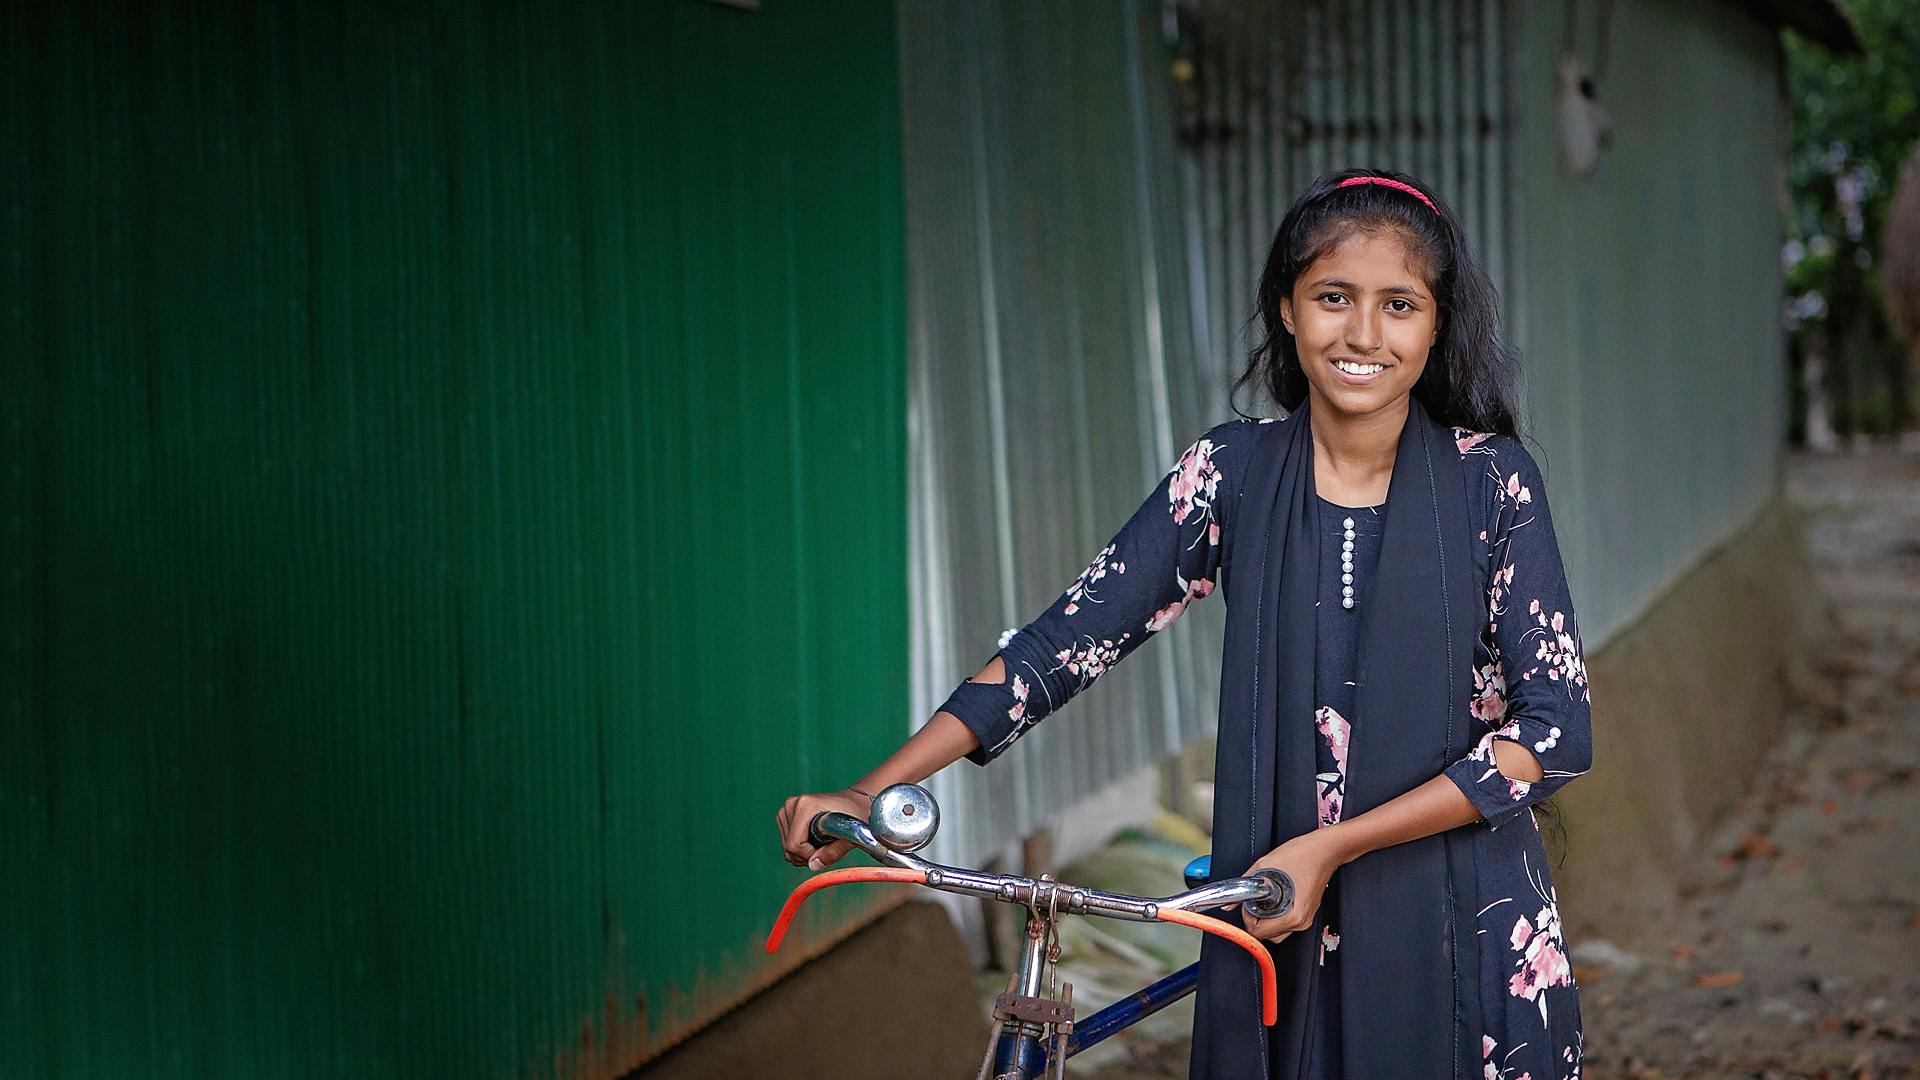 En flicka i blommönstrad klänning står med en cykel och ler mot kameran.